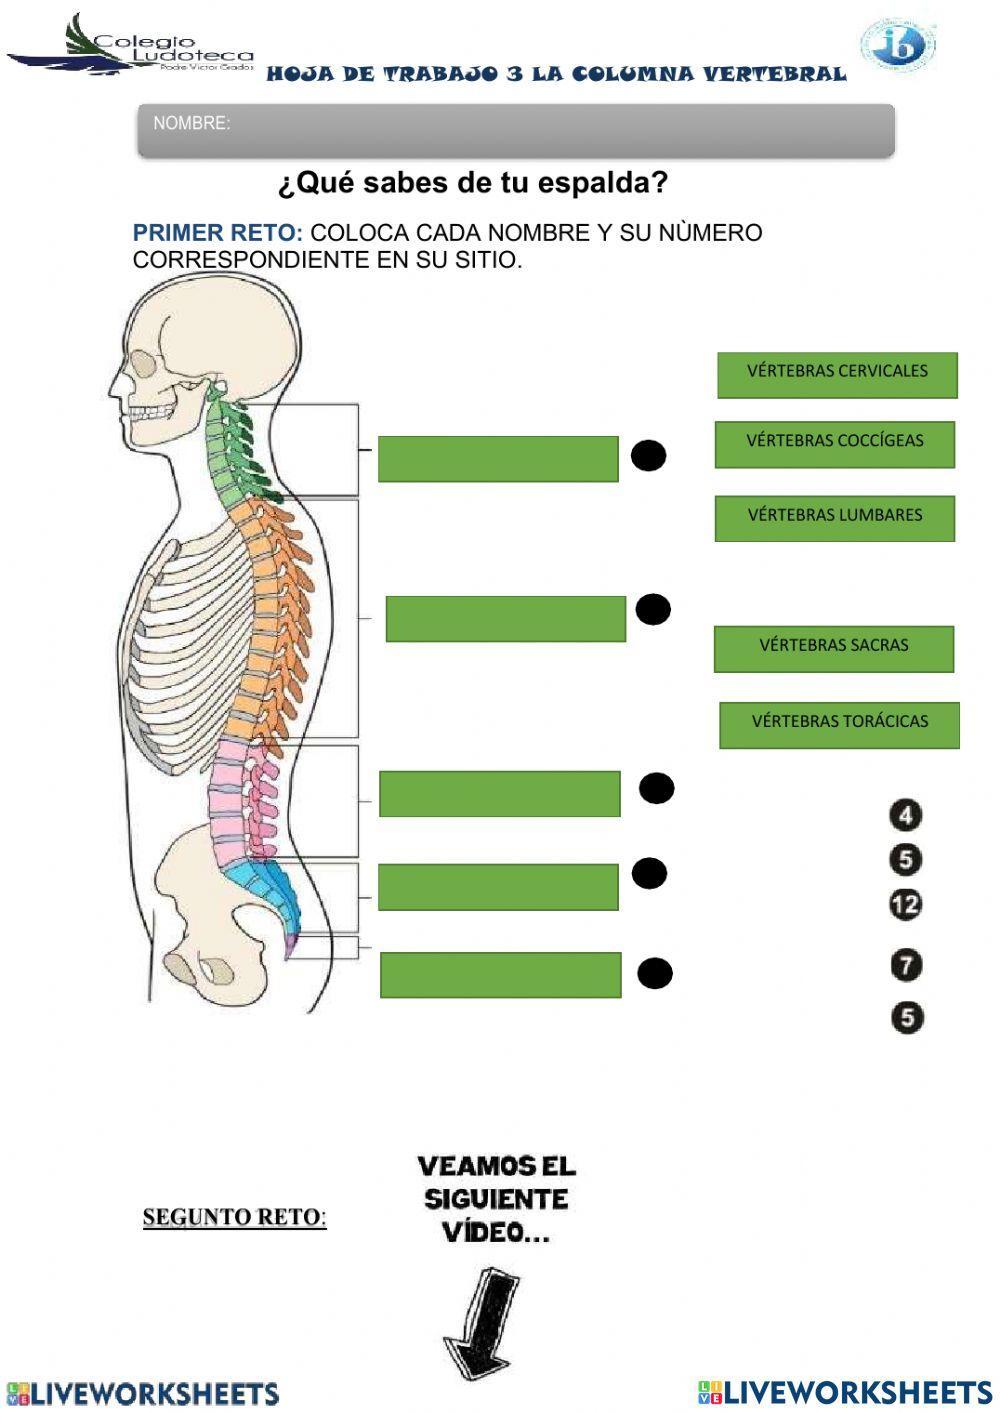 La columna vertebral